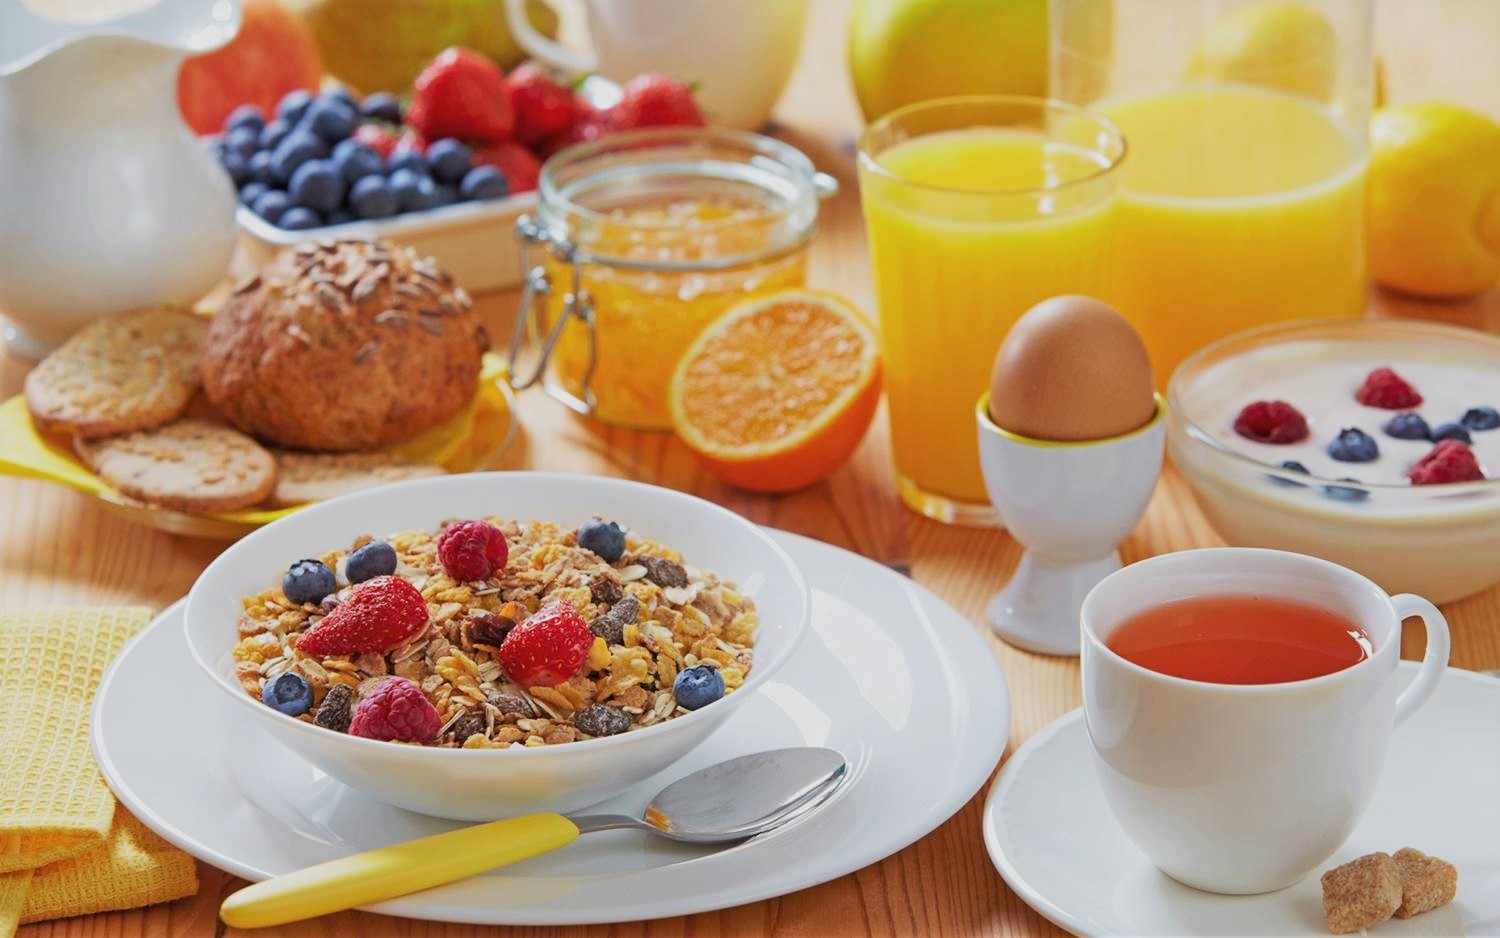 صبحانه اوتمیل یا گرانولا چیست و چه خواصی دارد؟